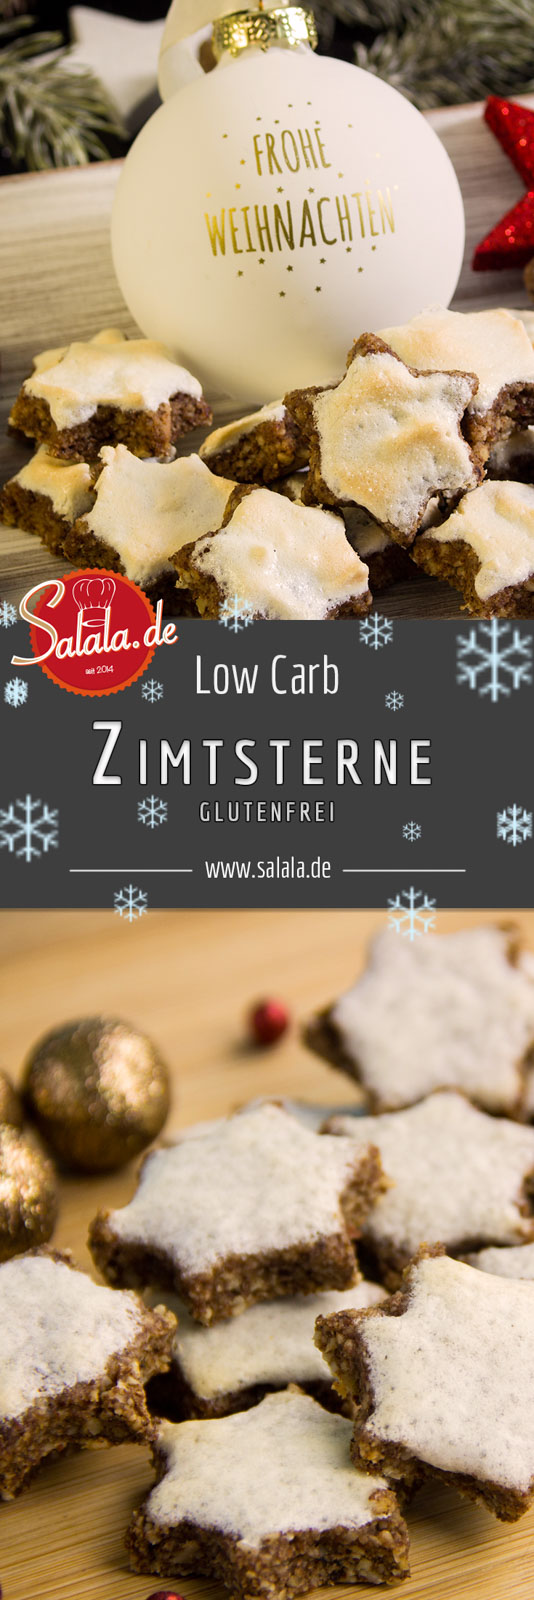 LowCarb Zimtsterne backen - Rezept für glutenfreie Zimtsterne in der Low Carb Weihnachtsbäckerei. Extrem leckere Zimsterne super einfach und schnell gemacht.